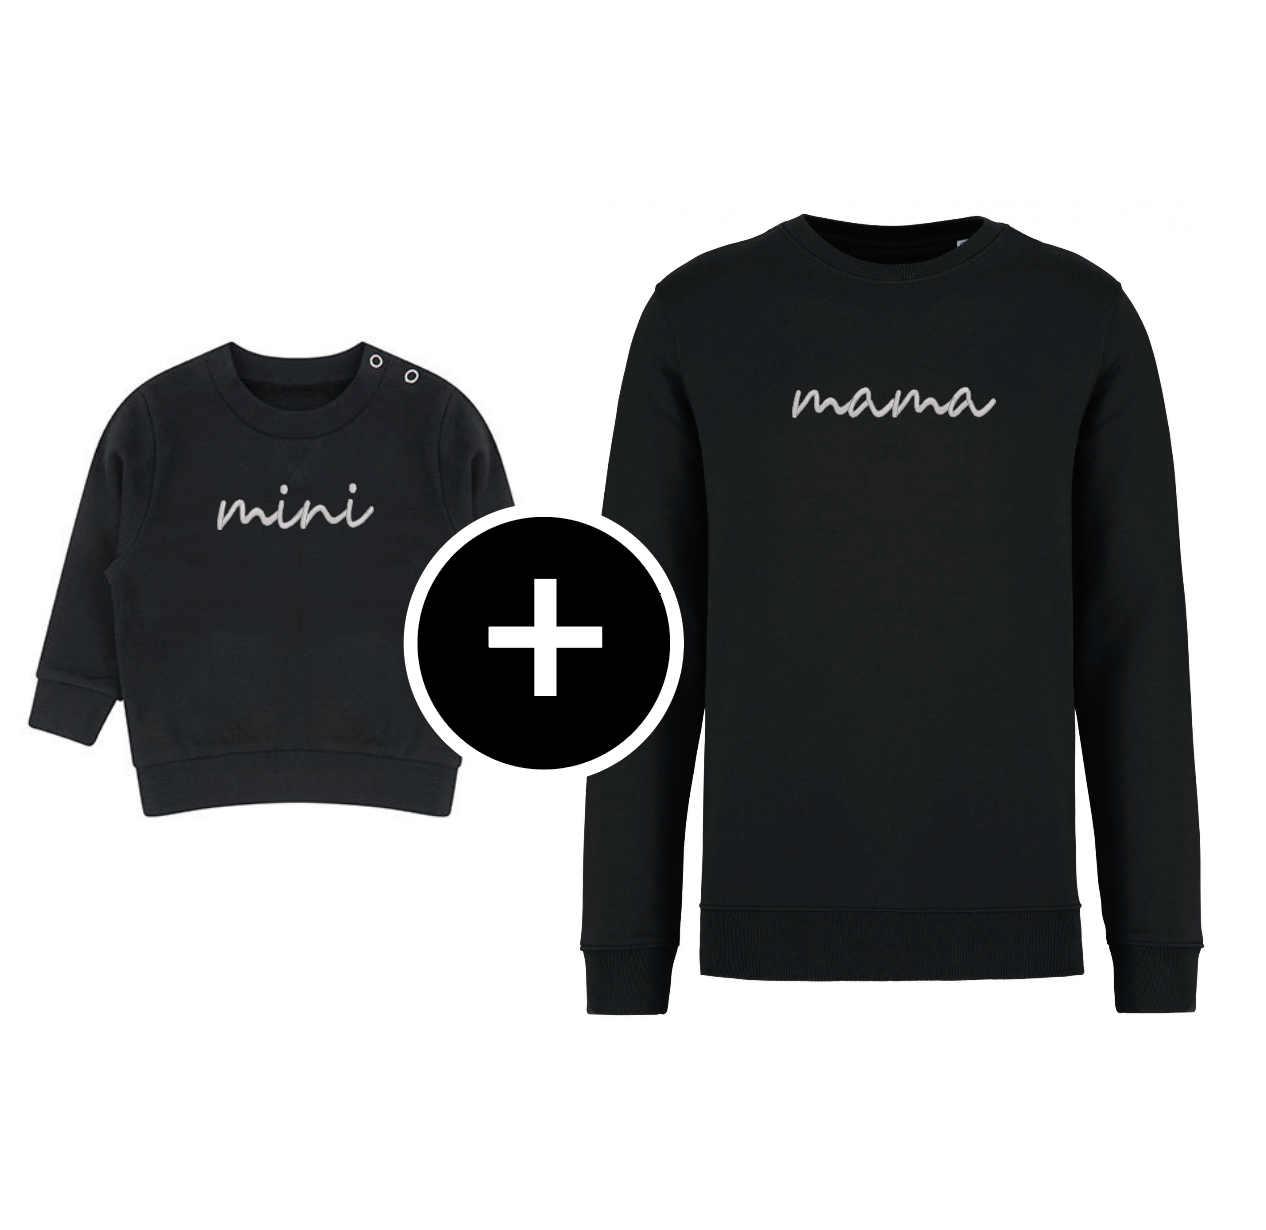 Matching sweaters - mini & mama/papa/etc.